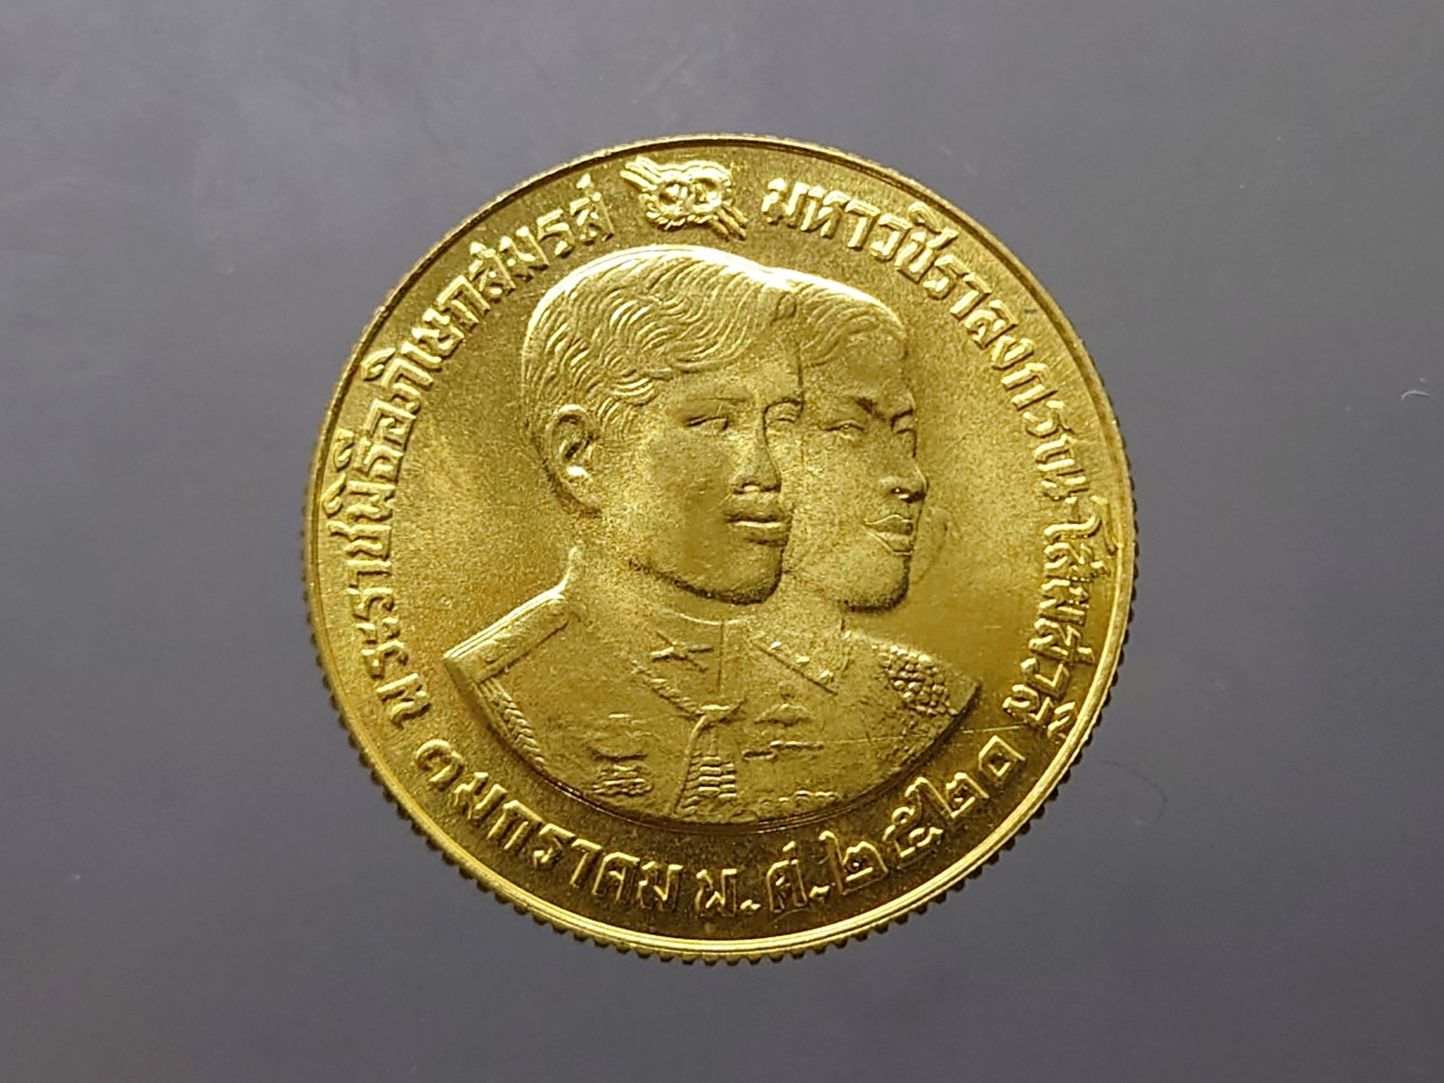 เหรียญทองคำ 2500 บาท ที่ระลึกพระราชพิธีอภิเษกสมรส สมเด็จพระบรมโอรสาธิราชฯ พ.ศ.2520 (หนัก 1 บาท) รูปที่ 3